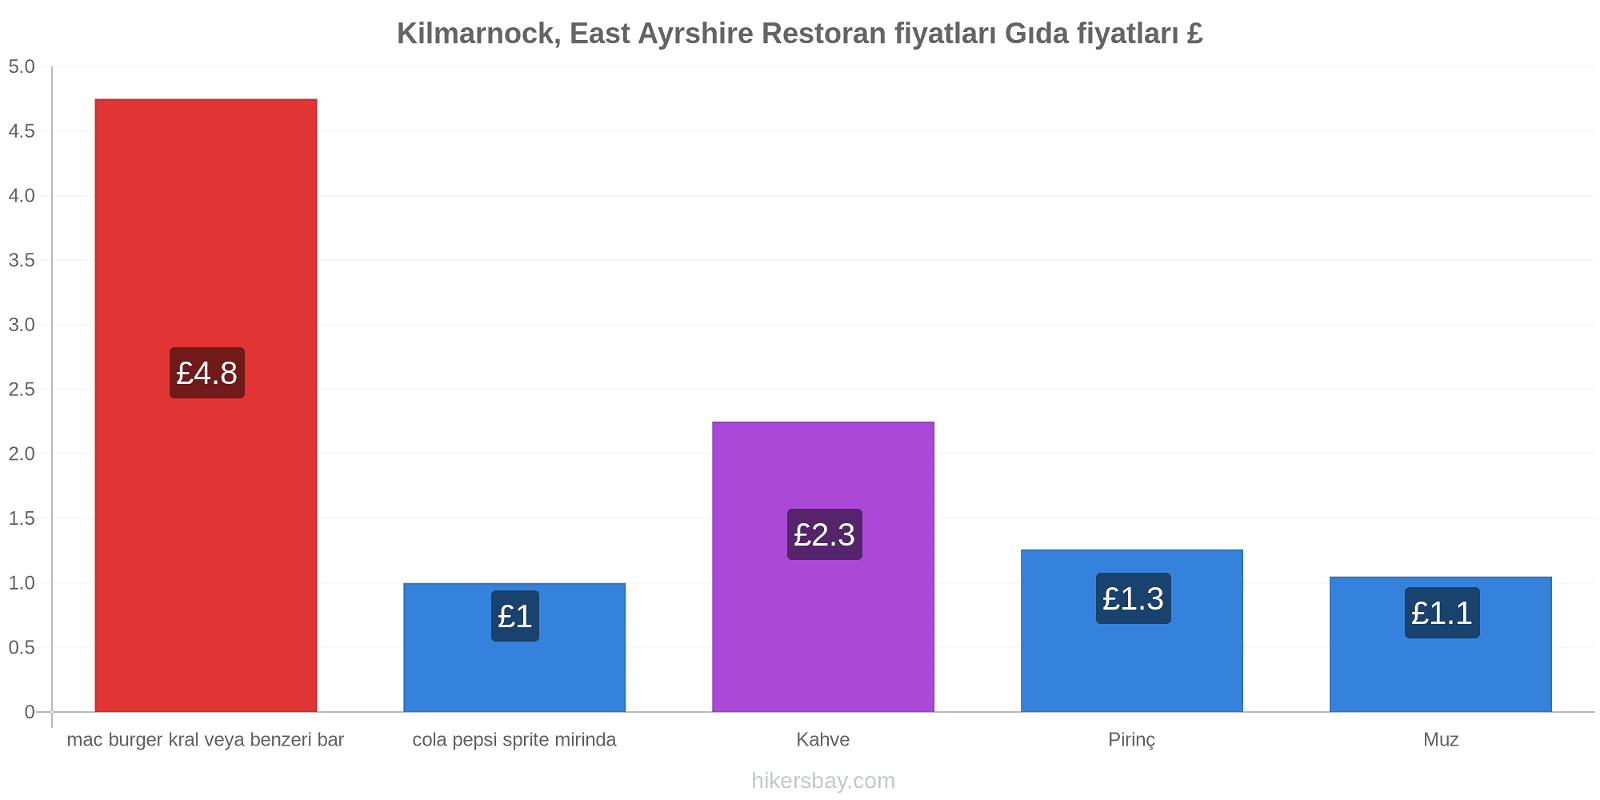 Kilmarnock, East Ayrshire fiyat değişiklikleri hikersbay.com